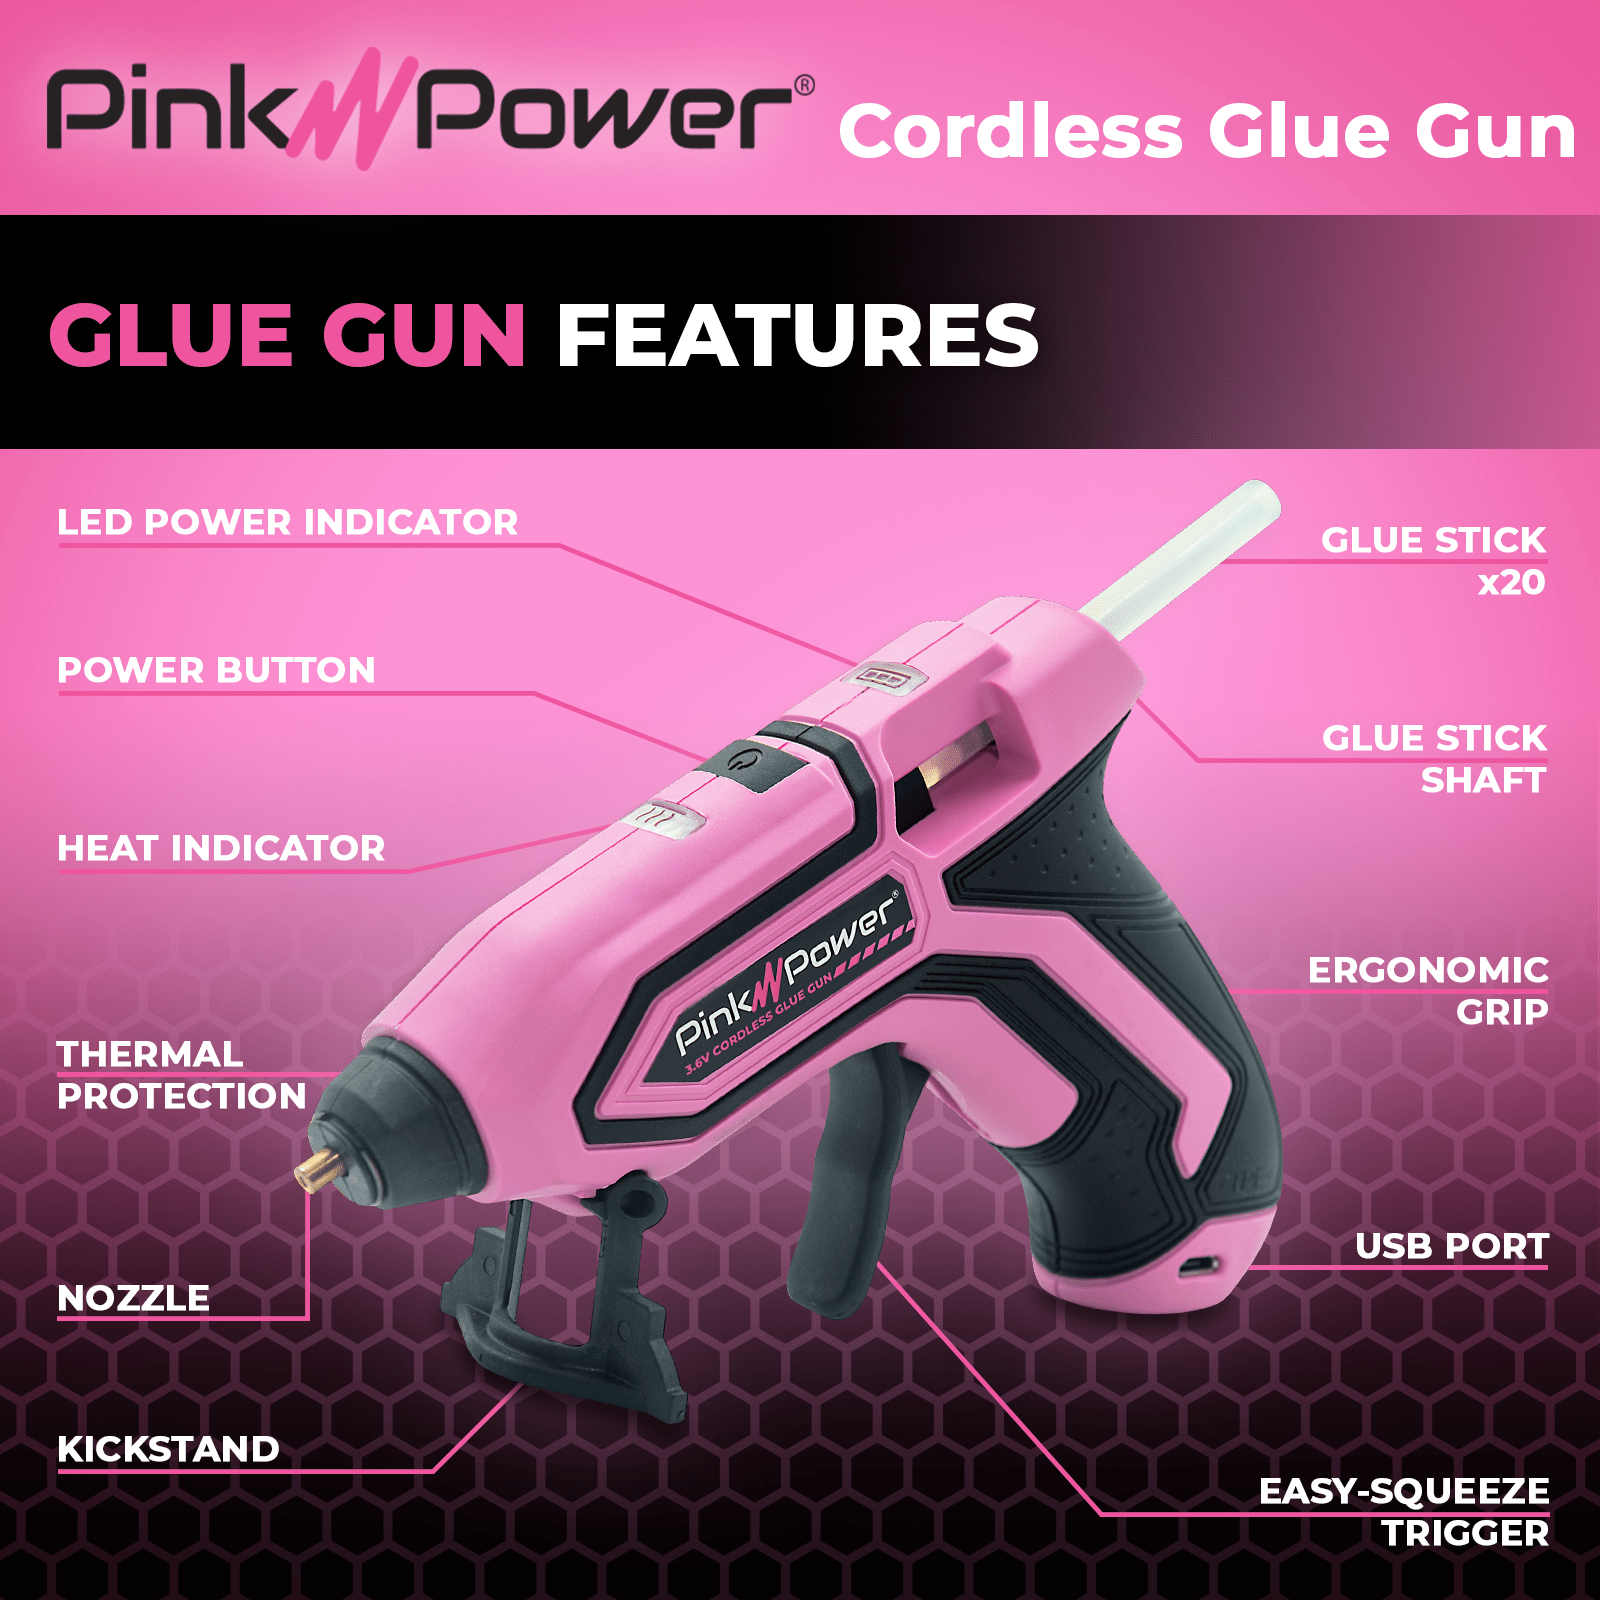 The Best Cordless Hot Glue Gun? 